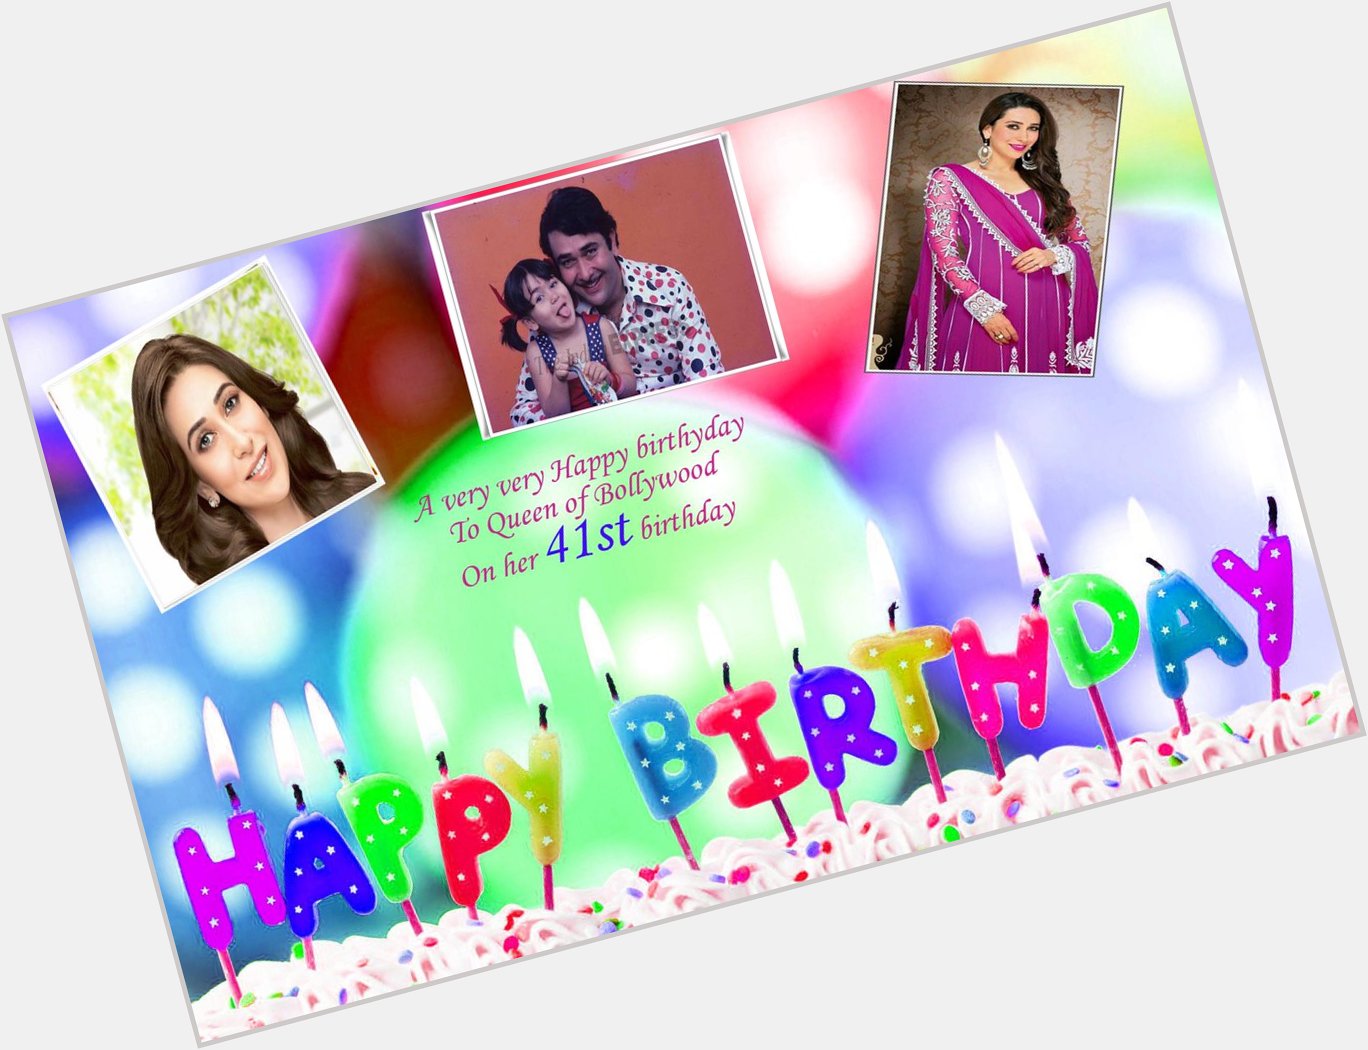  Wishing happy birthday to Karishma Kapoor
 